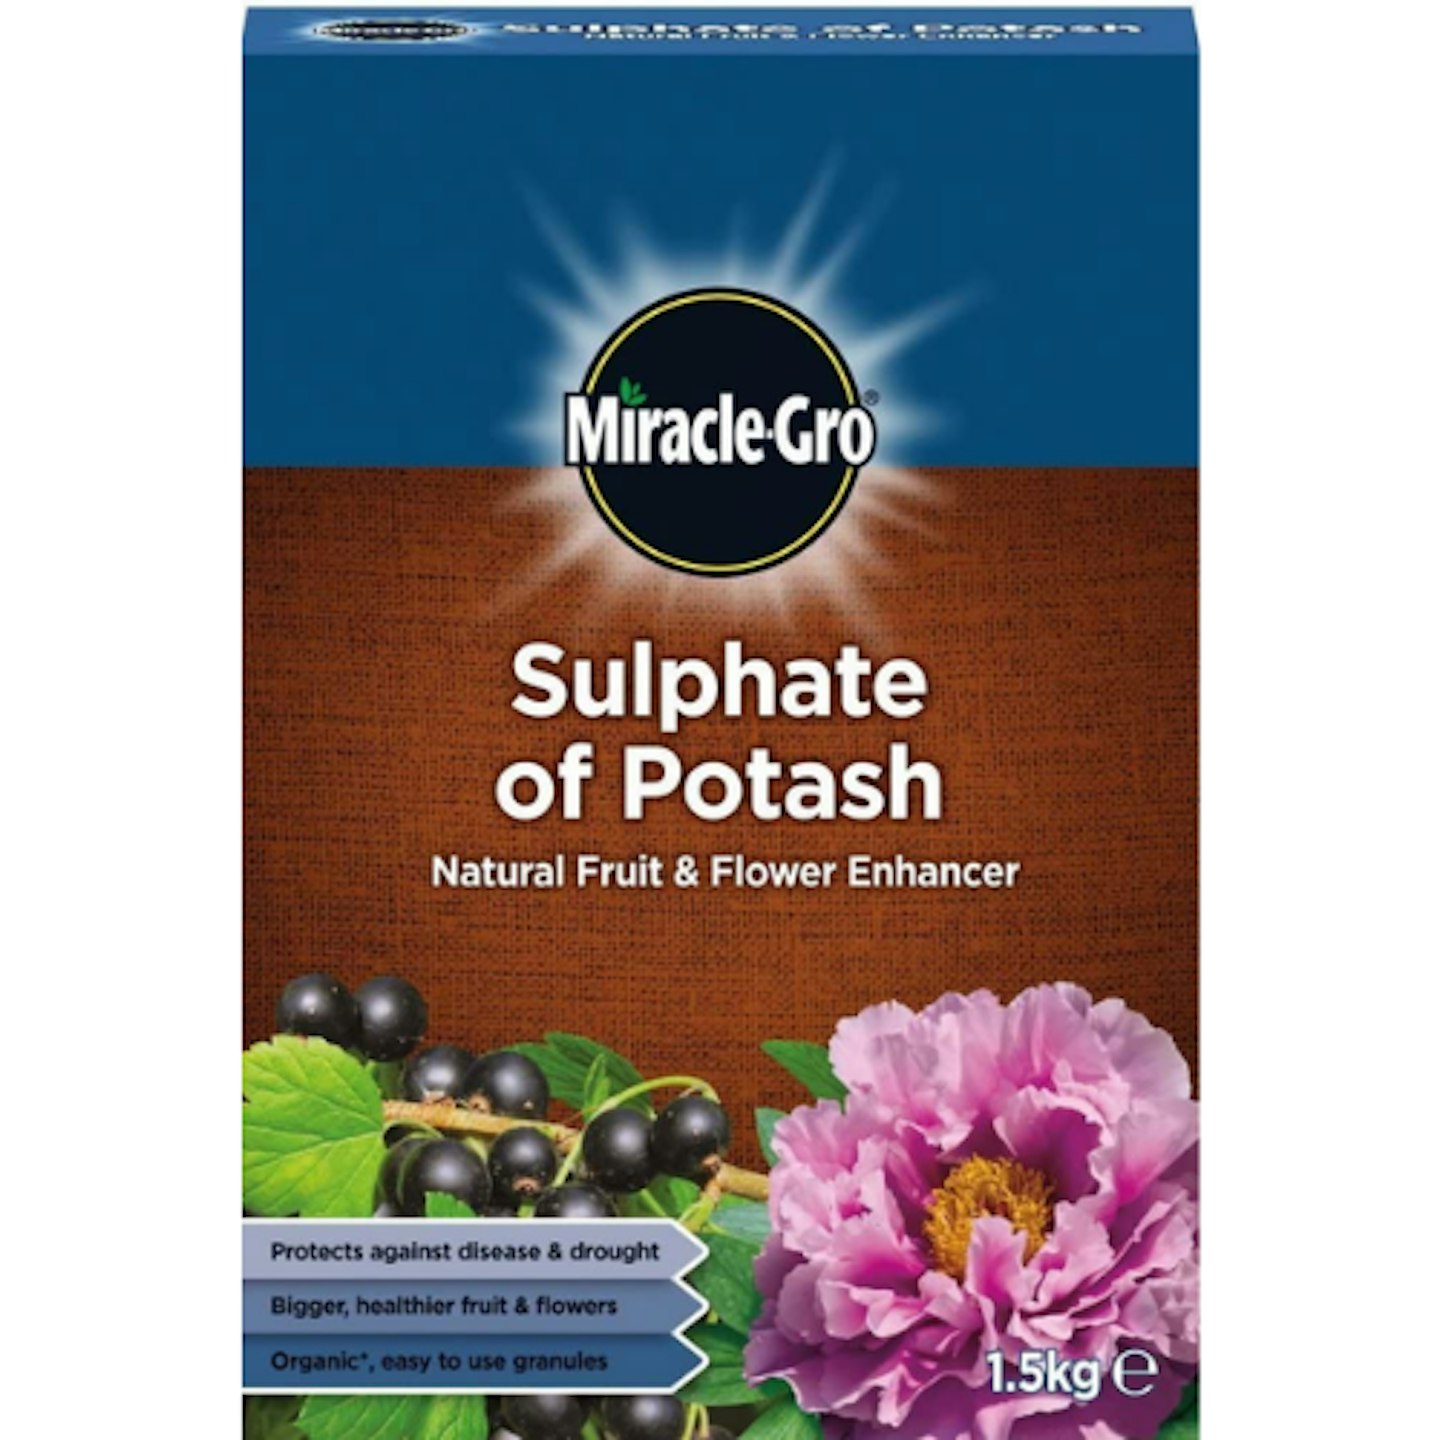 High Potash Fertiliser: Miracle-Gro Sulphate of Potash Fruit & Flower Enhancer, 1.5kg